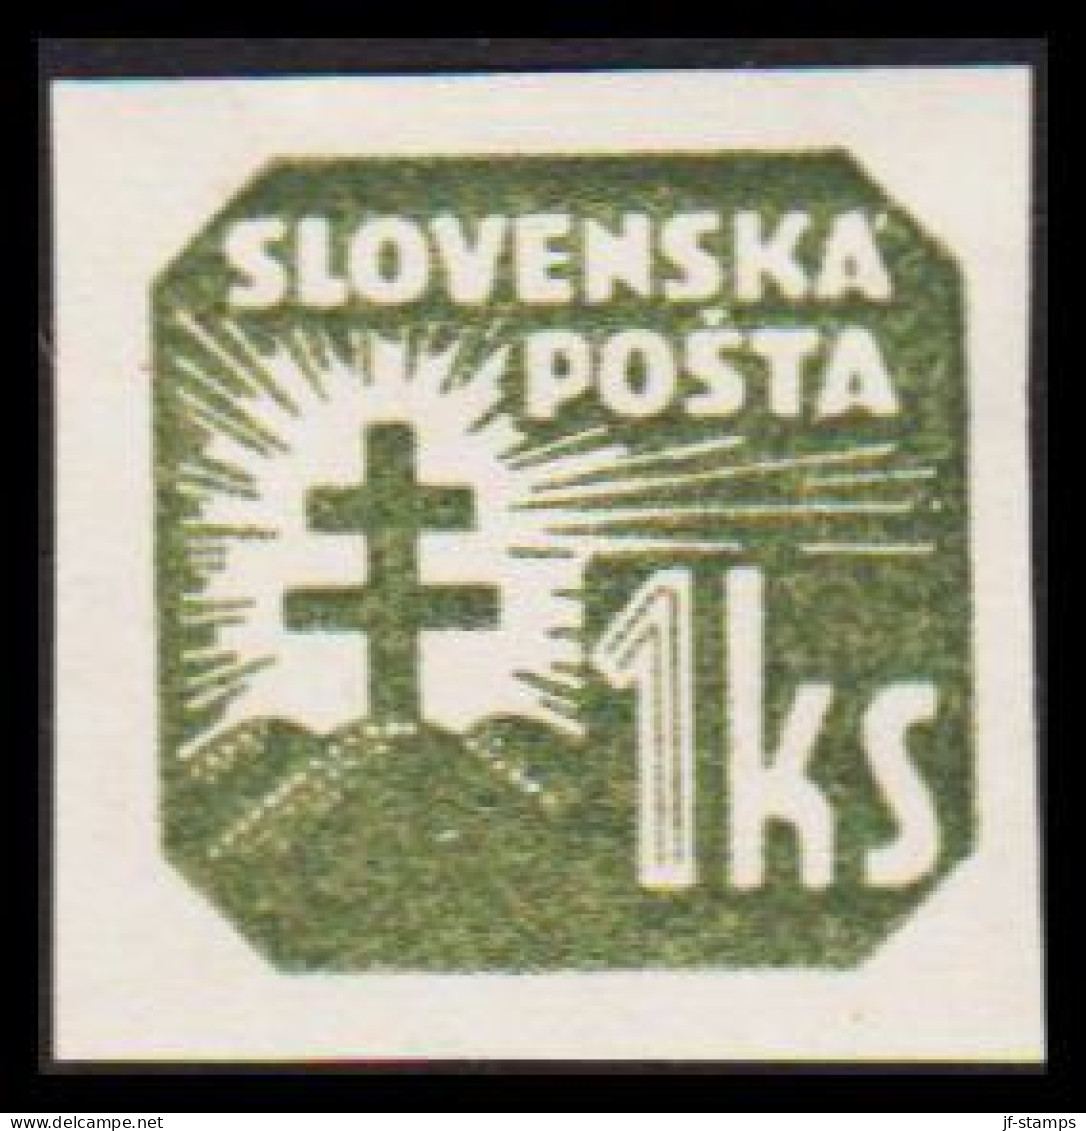 1939. SLOVENSKO 1 Ks Newspaper Stamp, Hinged.  (Michel 65) - JF545961 - Unused Stamps